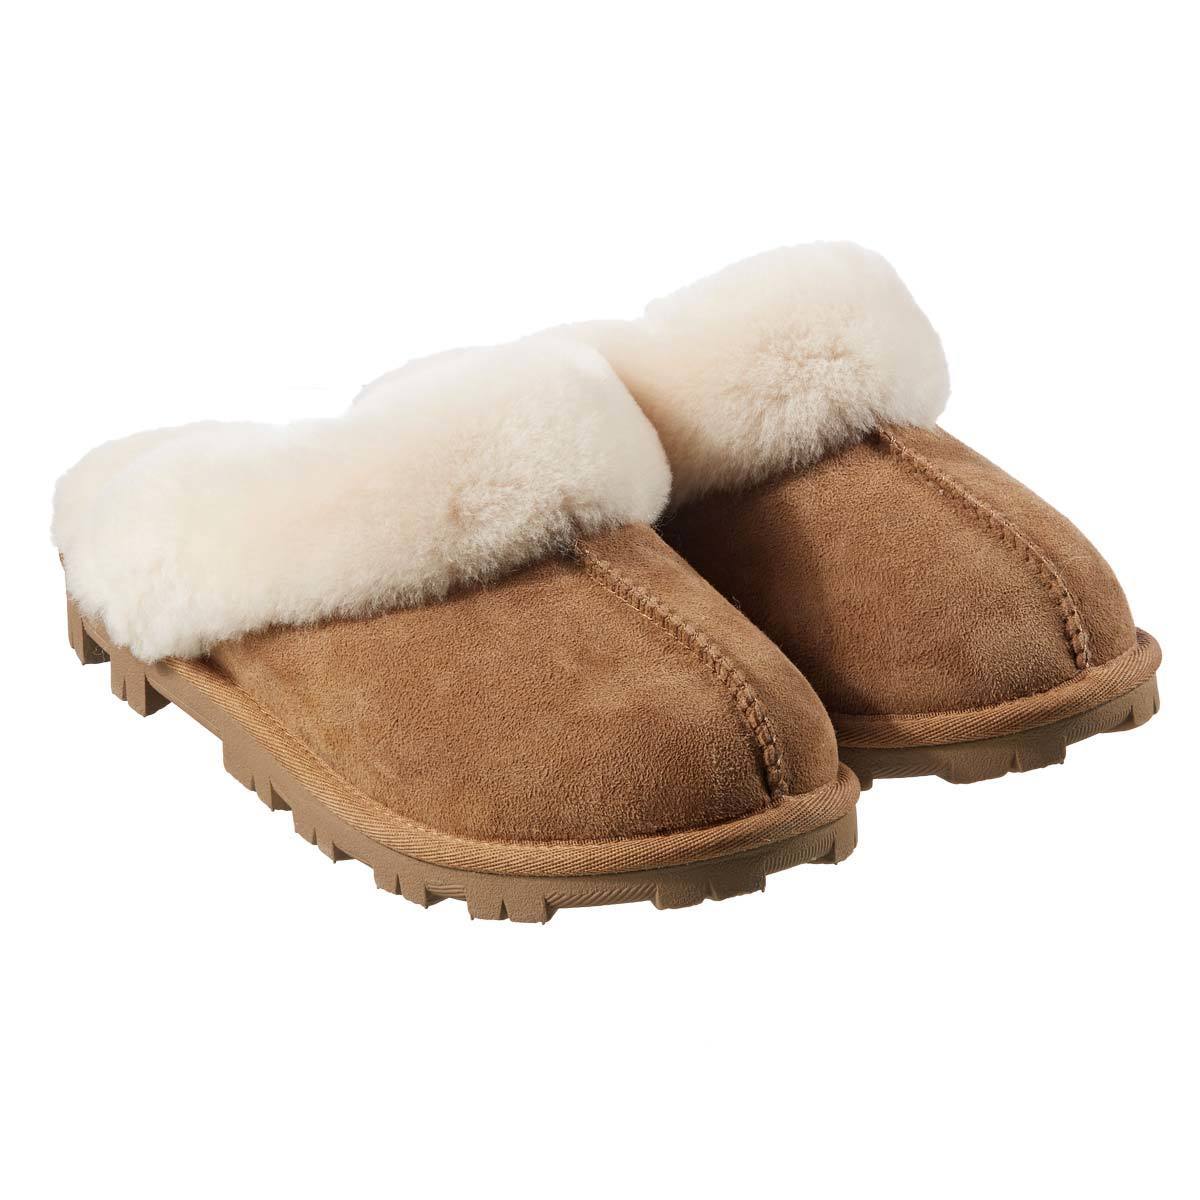 slipper womens size new arrivals ec1e3 